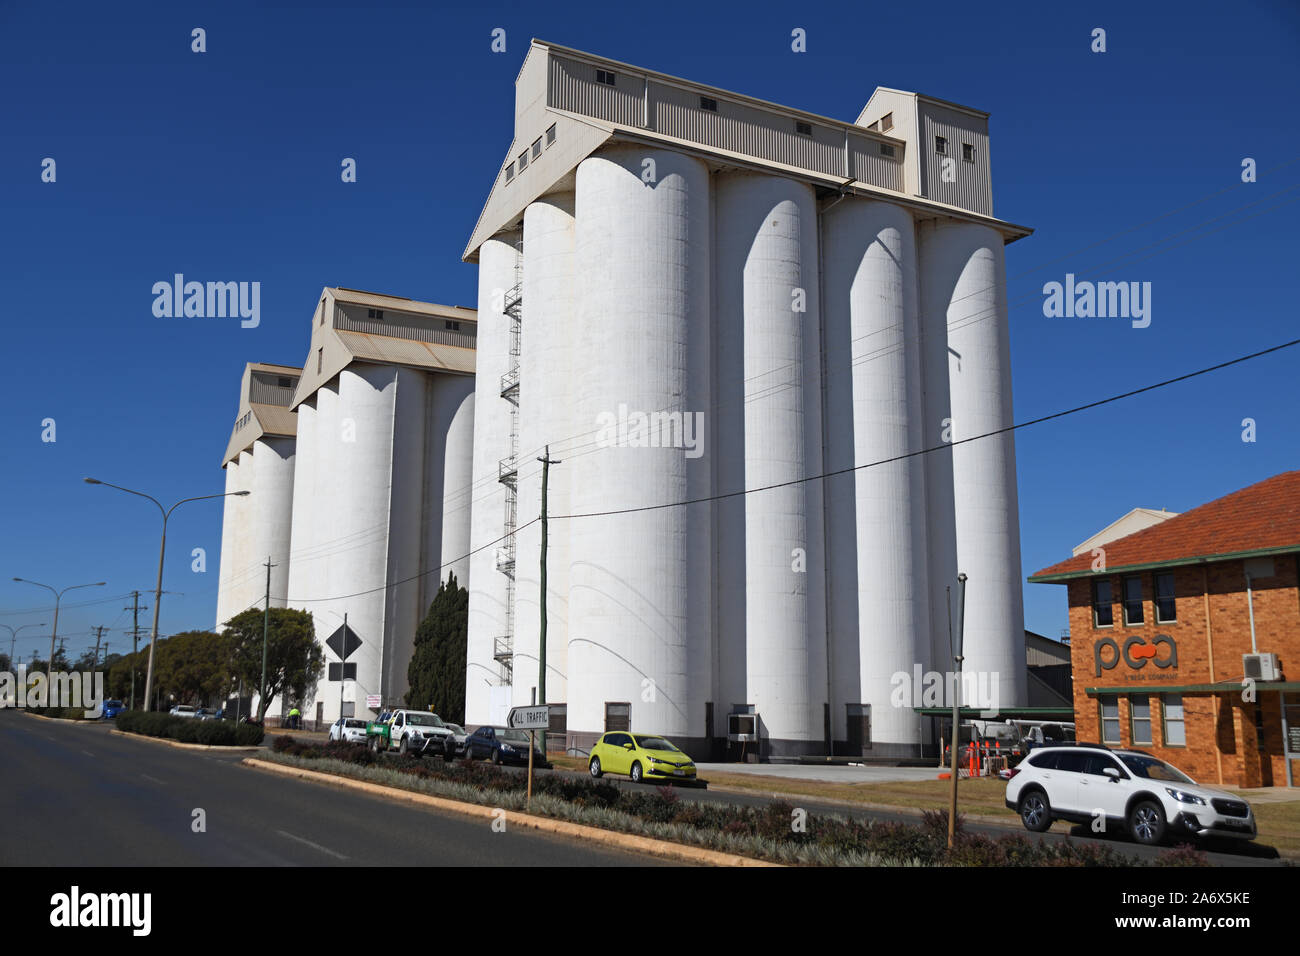 KINGAROY, AUSTRALIE, LE 30 JUILLET 2019 : l'emblématique Kingaroy Peanut en silos Haly Street, Kingaroy, Queensland, célèbre du siècle dernier pour ses arachides locales cro Banque D'Images